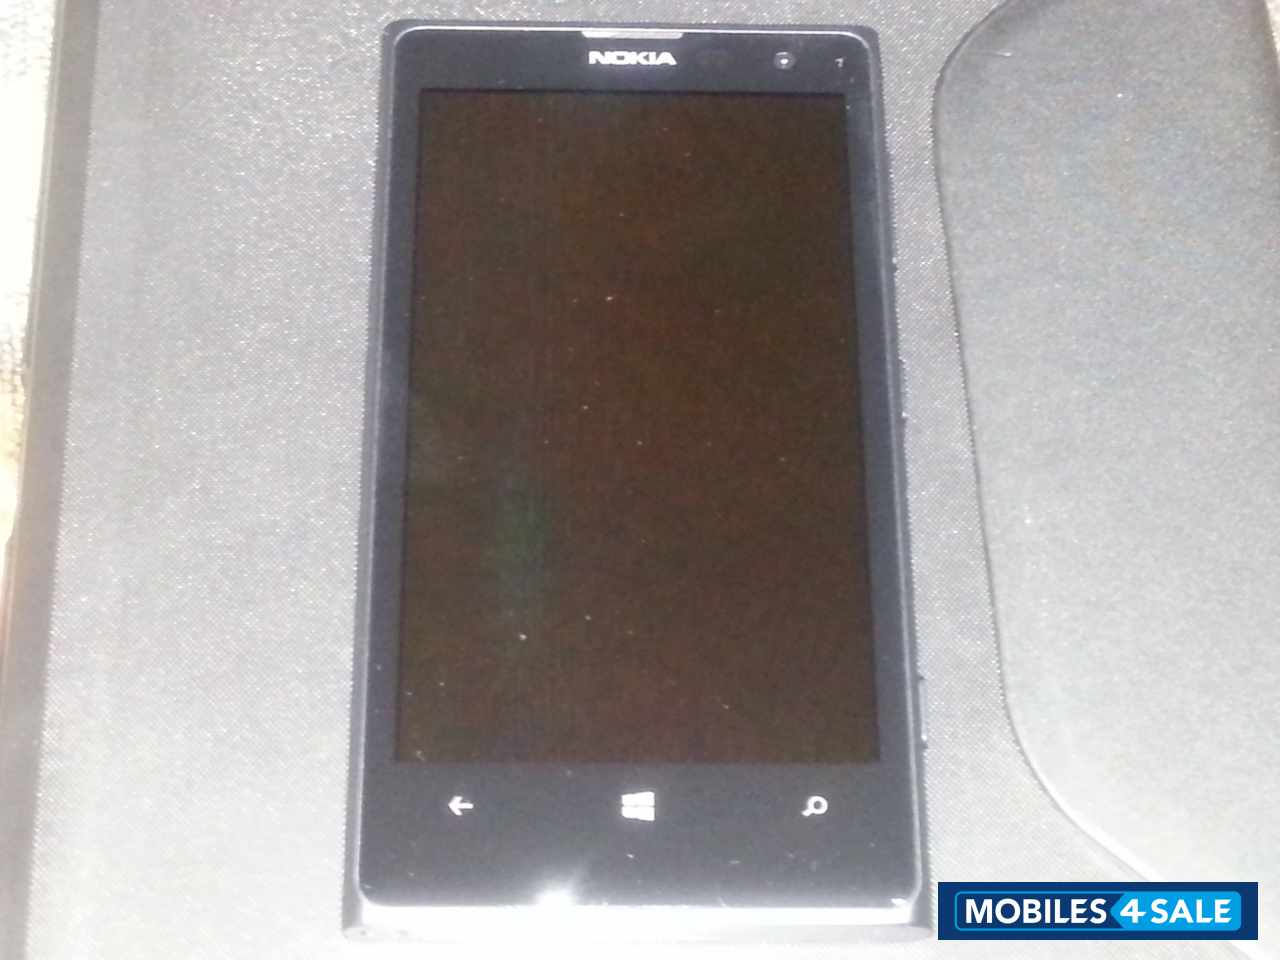 Black Nokia Lumia 1020